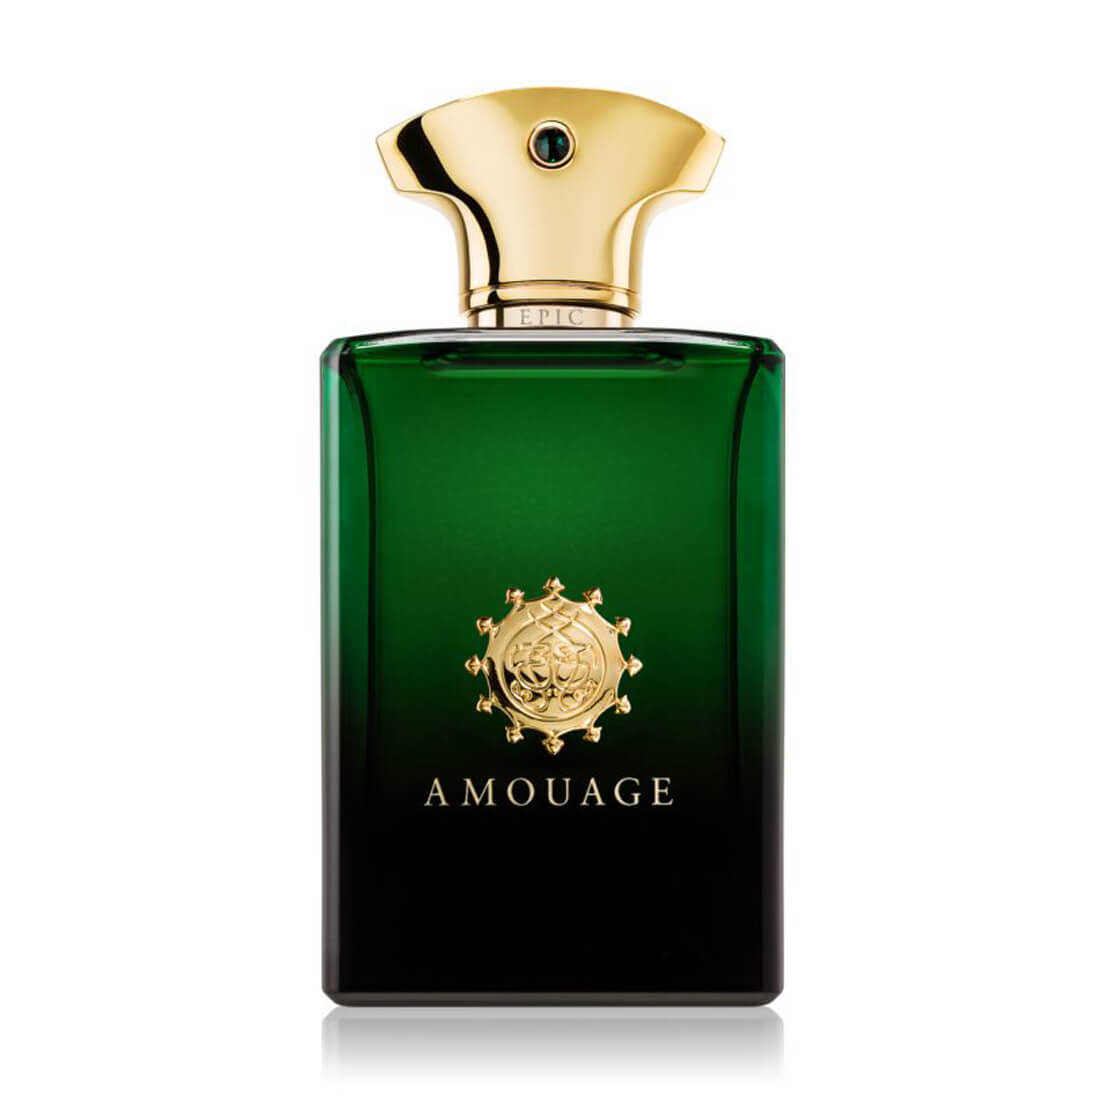 Amouage Epic Eau De Parfum For Men